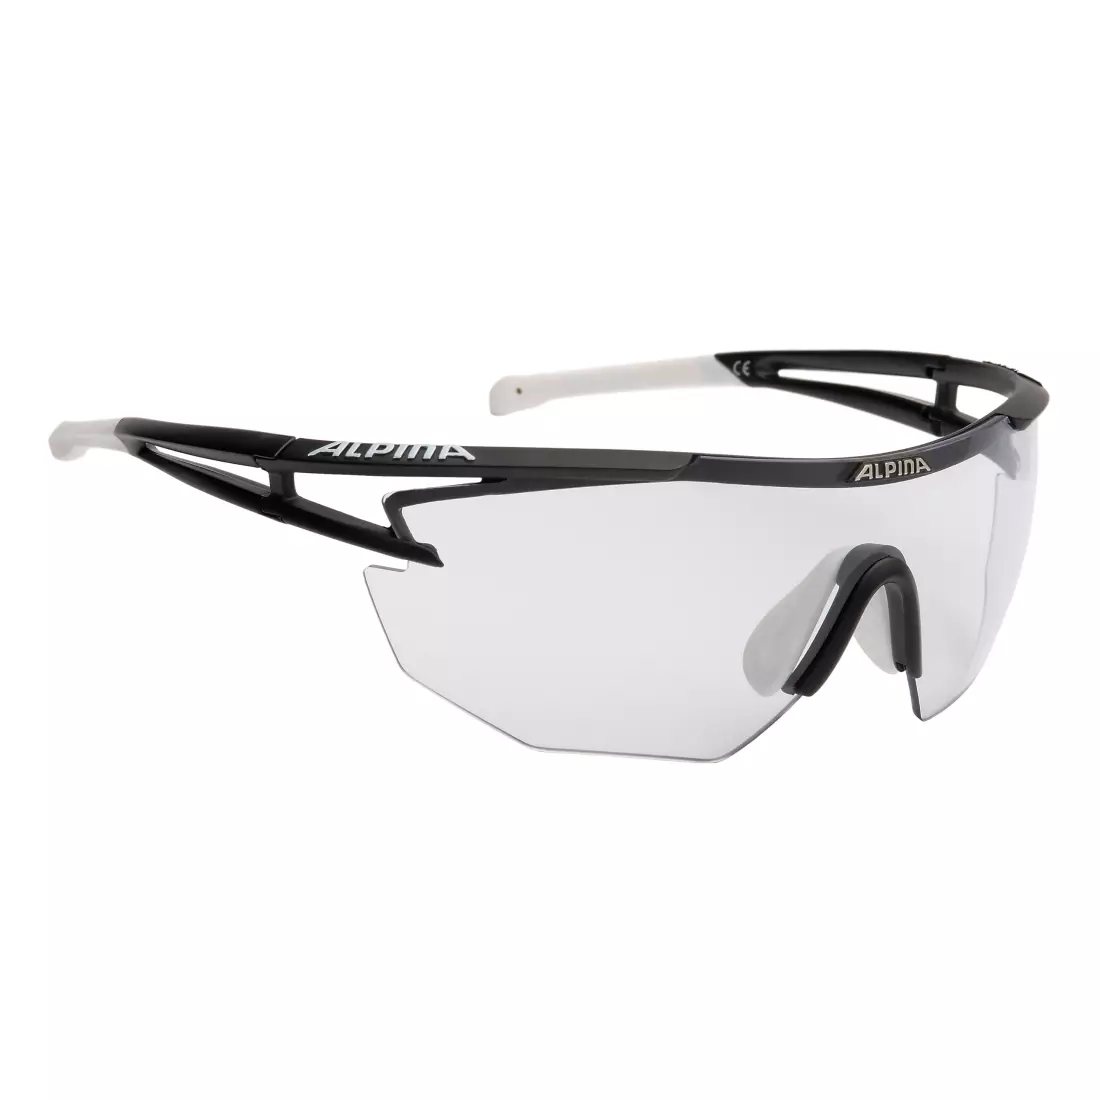 ALPINA SS19 glasses photochrom EYE-5 SH. VL+ black-white A8545131